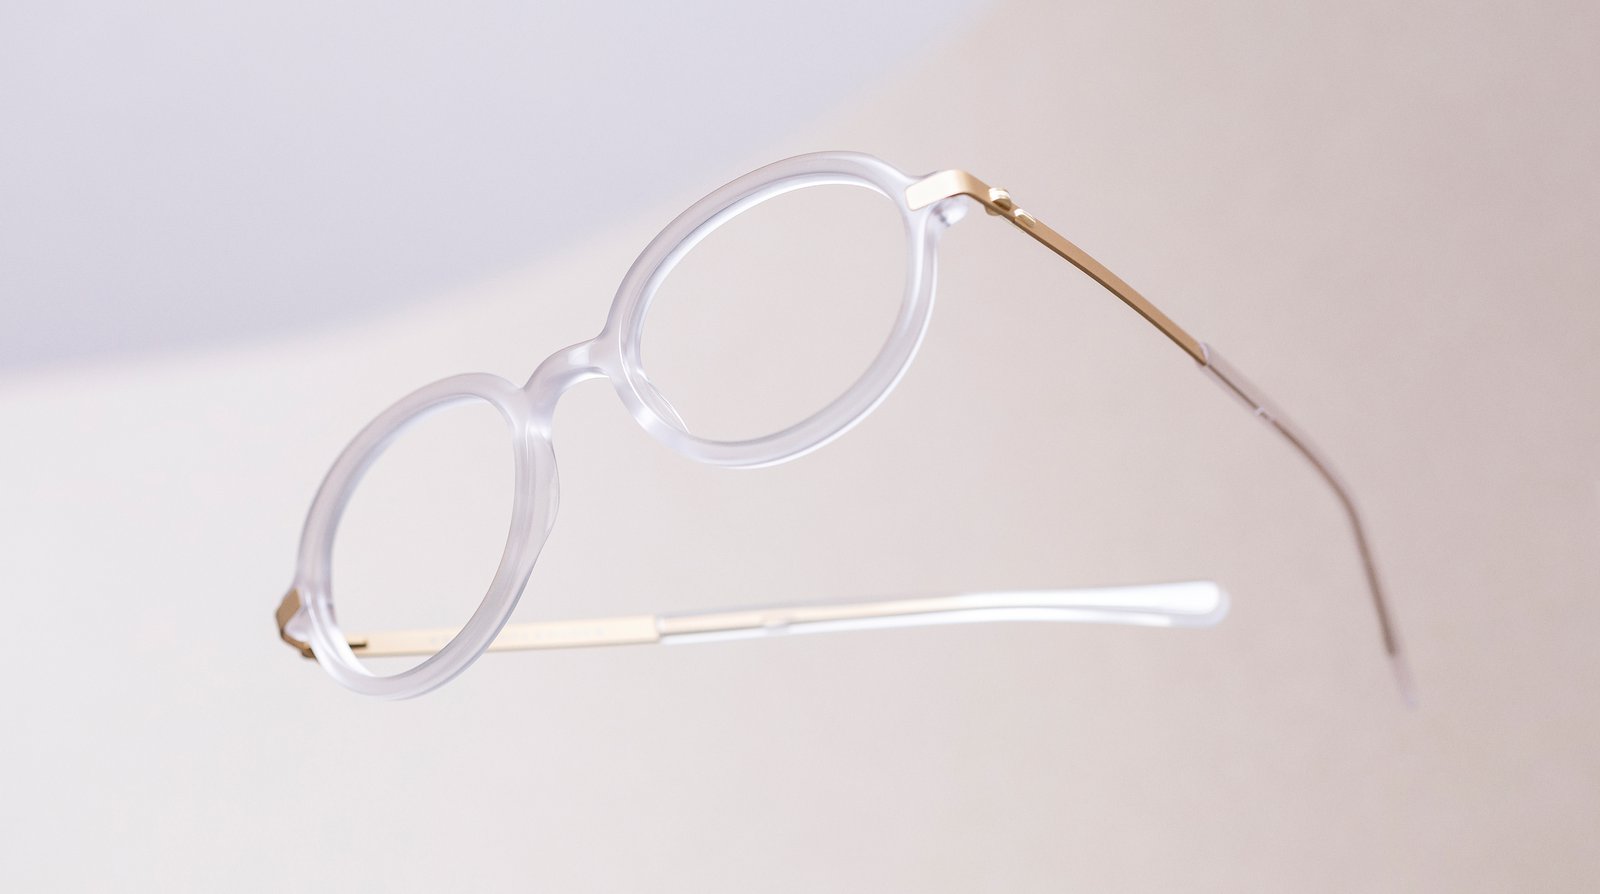 Brillen van VAERK uit het artikel The Best Independent Eyewear Brands gepubliceerd door FAVR the premium eyewear finder.